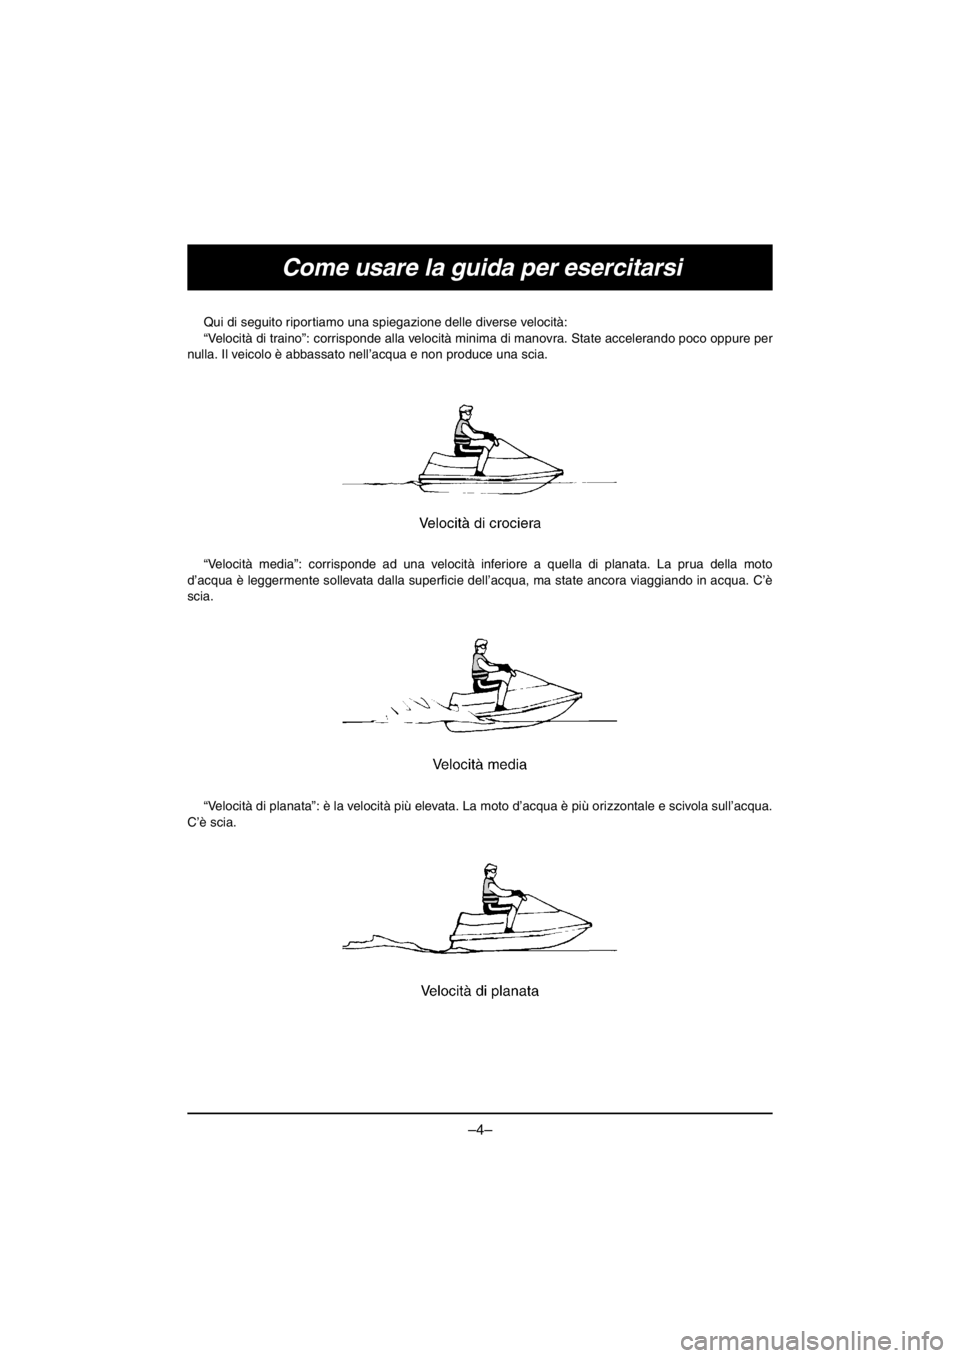 YAMAHA V1 2016  Notices Demploi (in French) –4–
Come usare la guida per esercitarsi
Qui di seguito riportiamo una spiegazione delle diverse velocità: 
“Velocità di traino”: corrisponde alla velocità minima di manovra. State acceleran